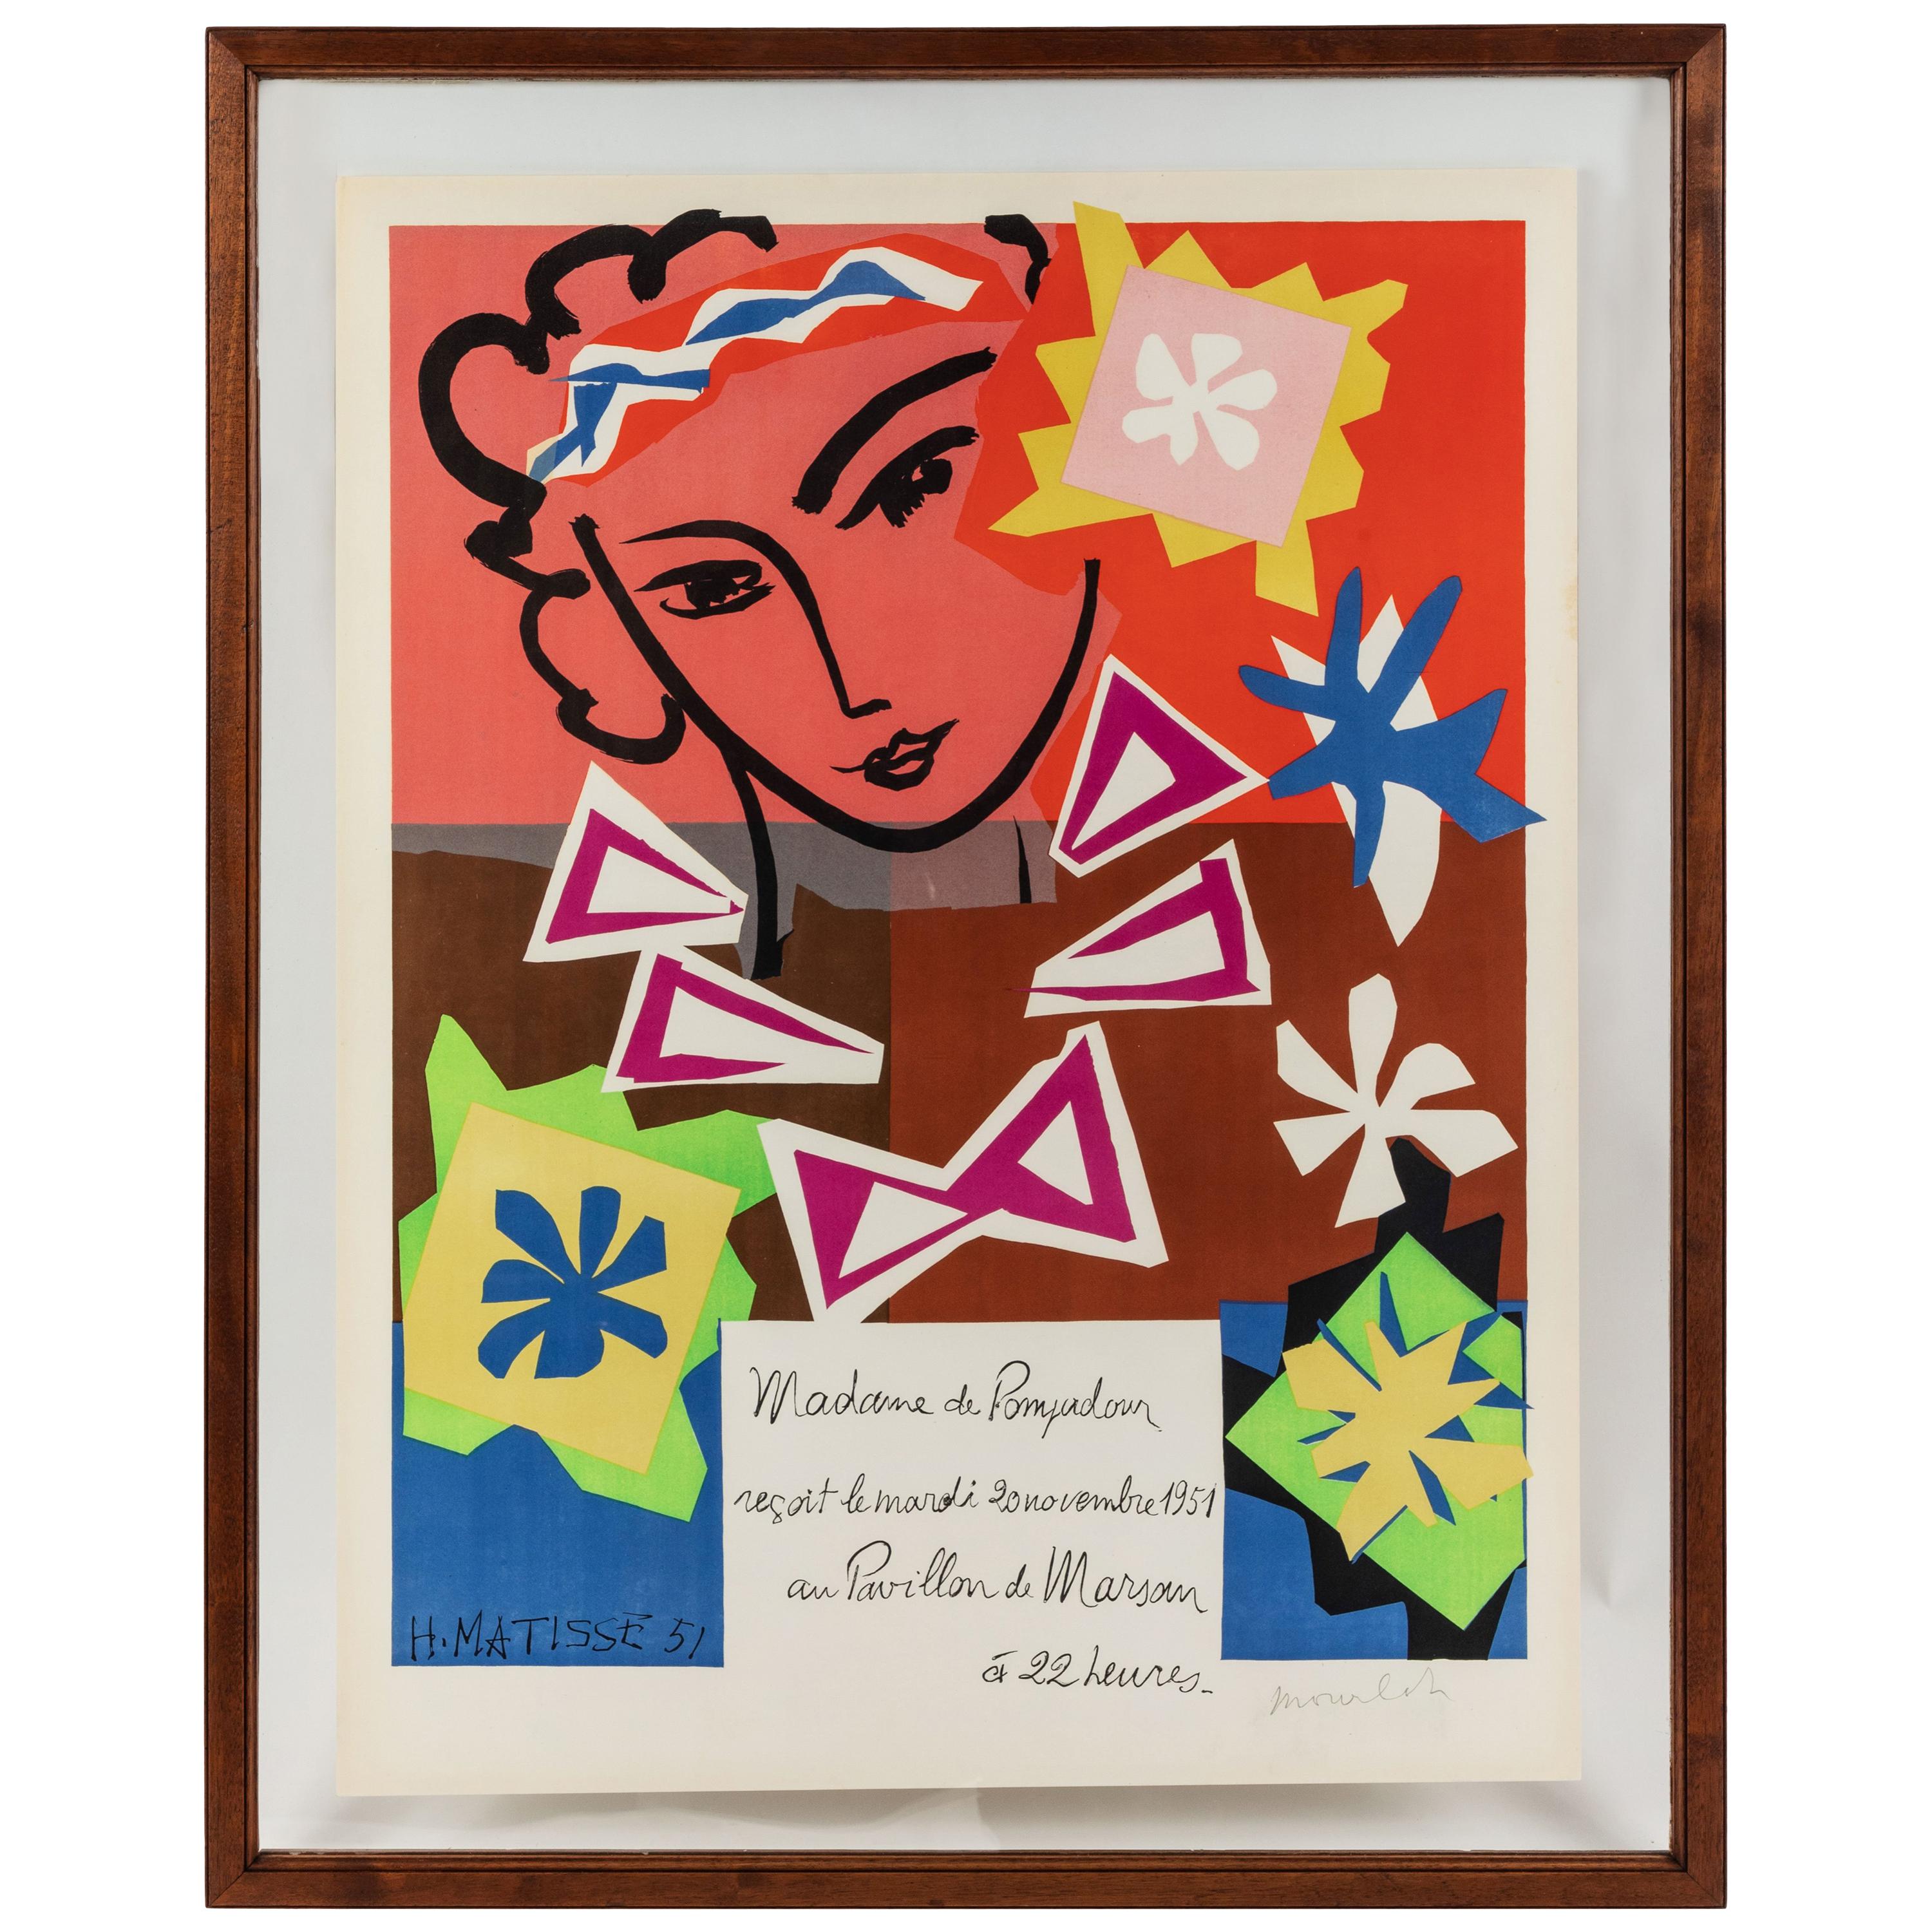 Madame Pompadour, vintage poster designed by Matisse